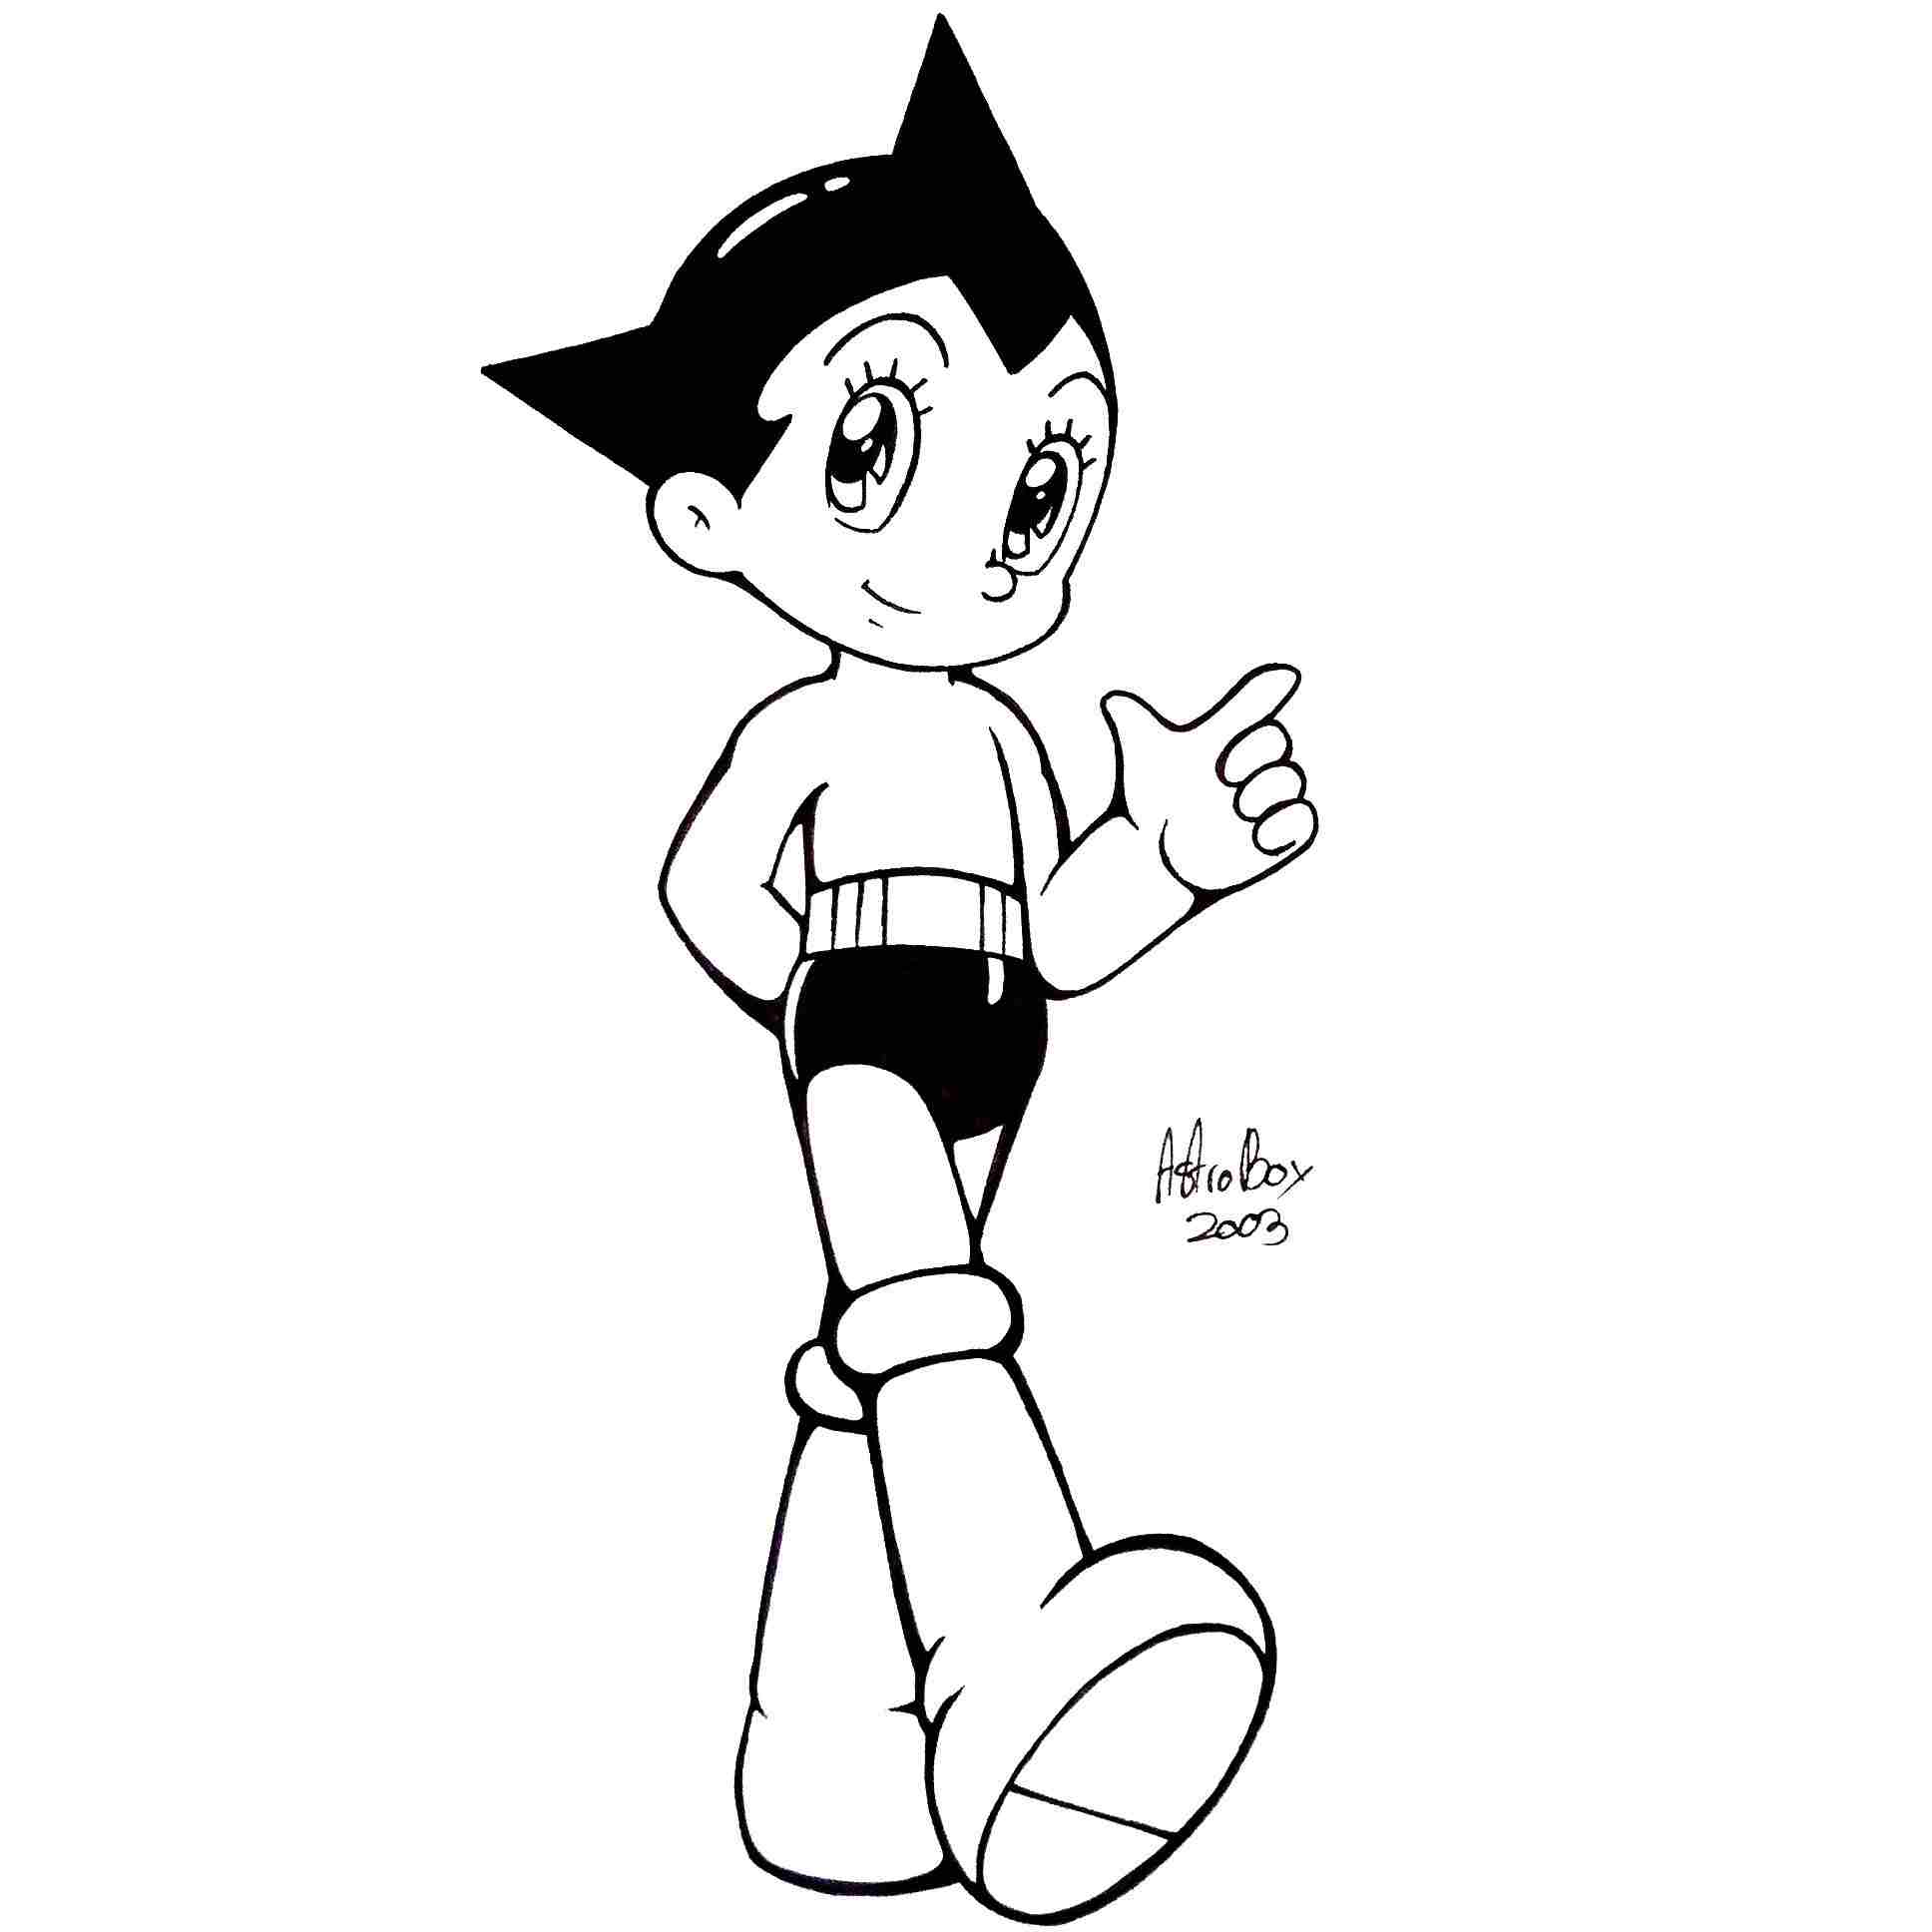 Hübscher Astro Boy im Astro Boy-Animationsfilm von Astro Boy